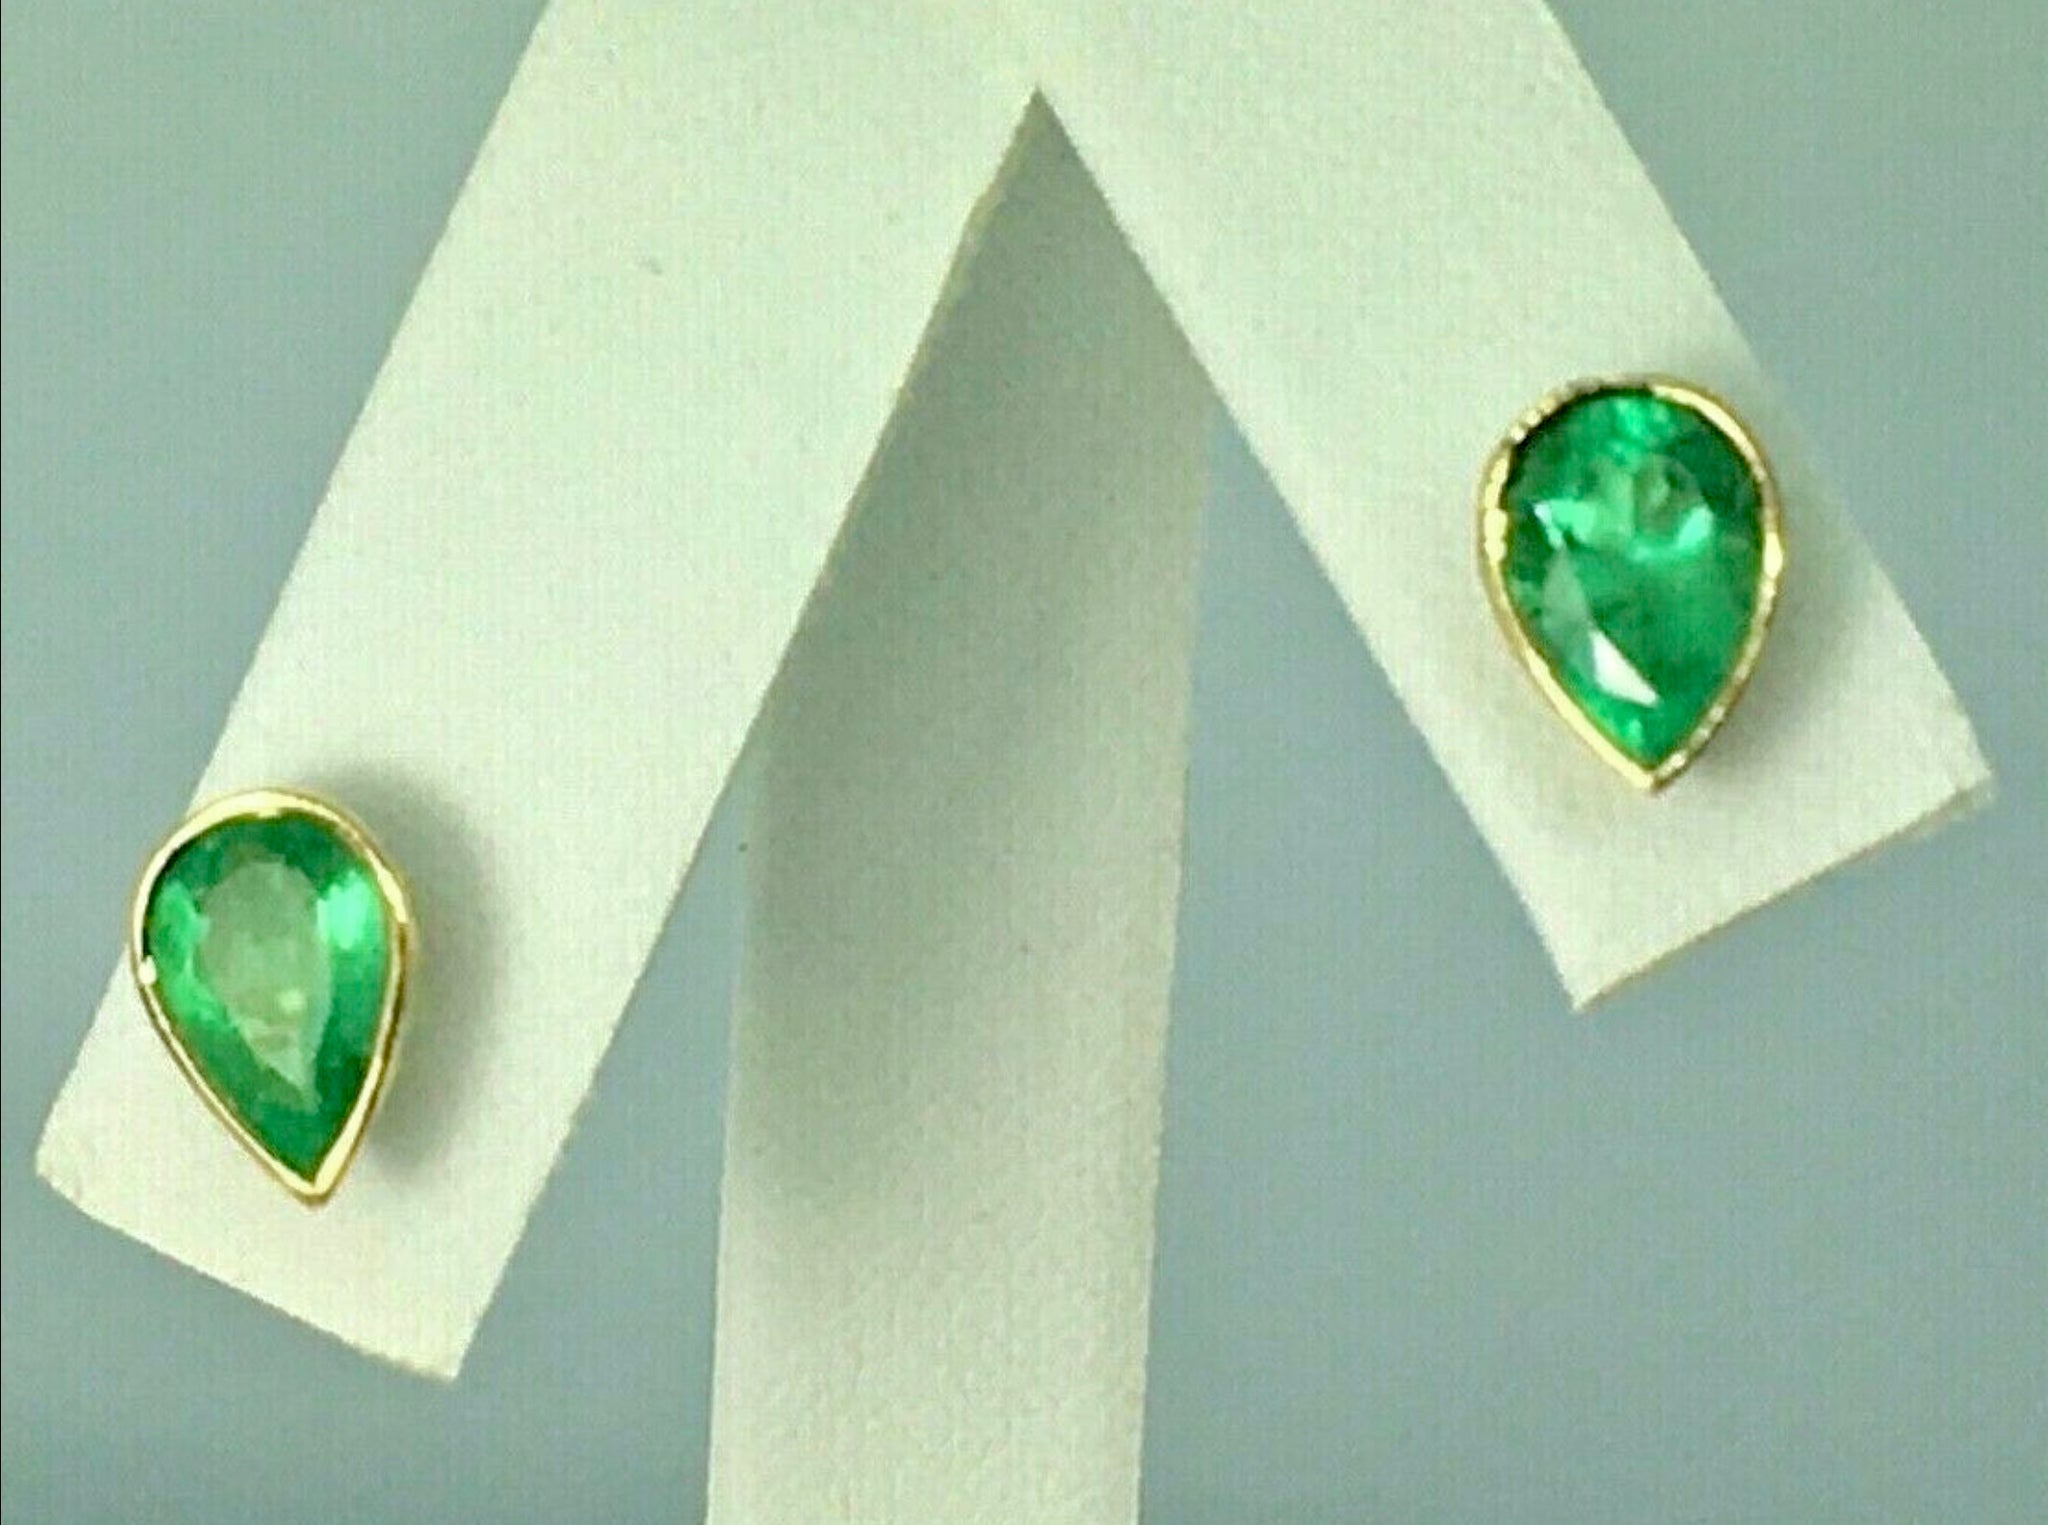 2.50 Carat Pear Cut Colombian Emerald Stud Earrings 18 Karat